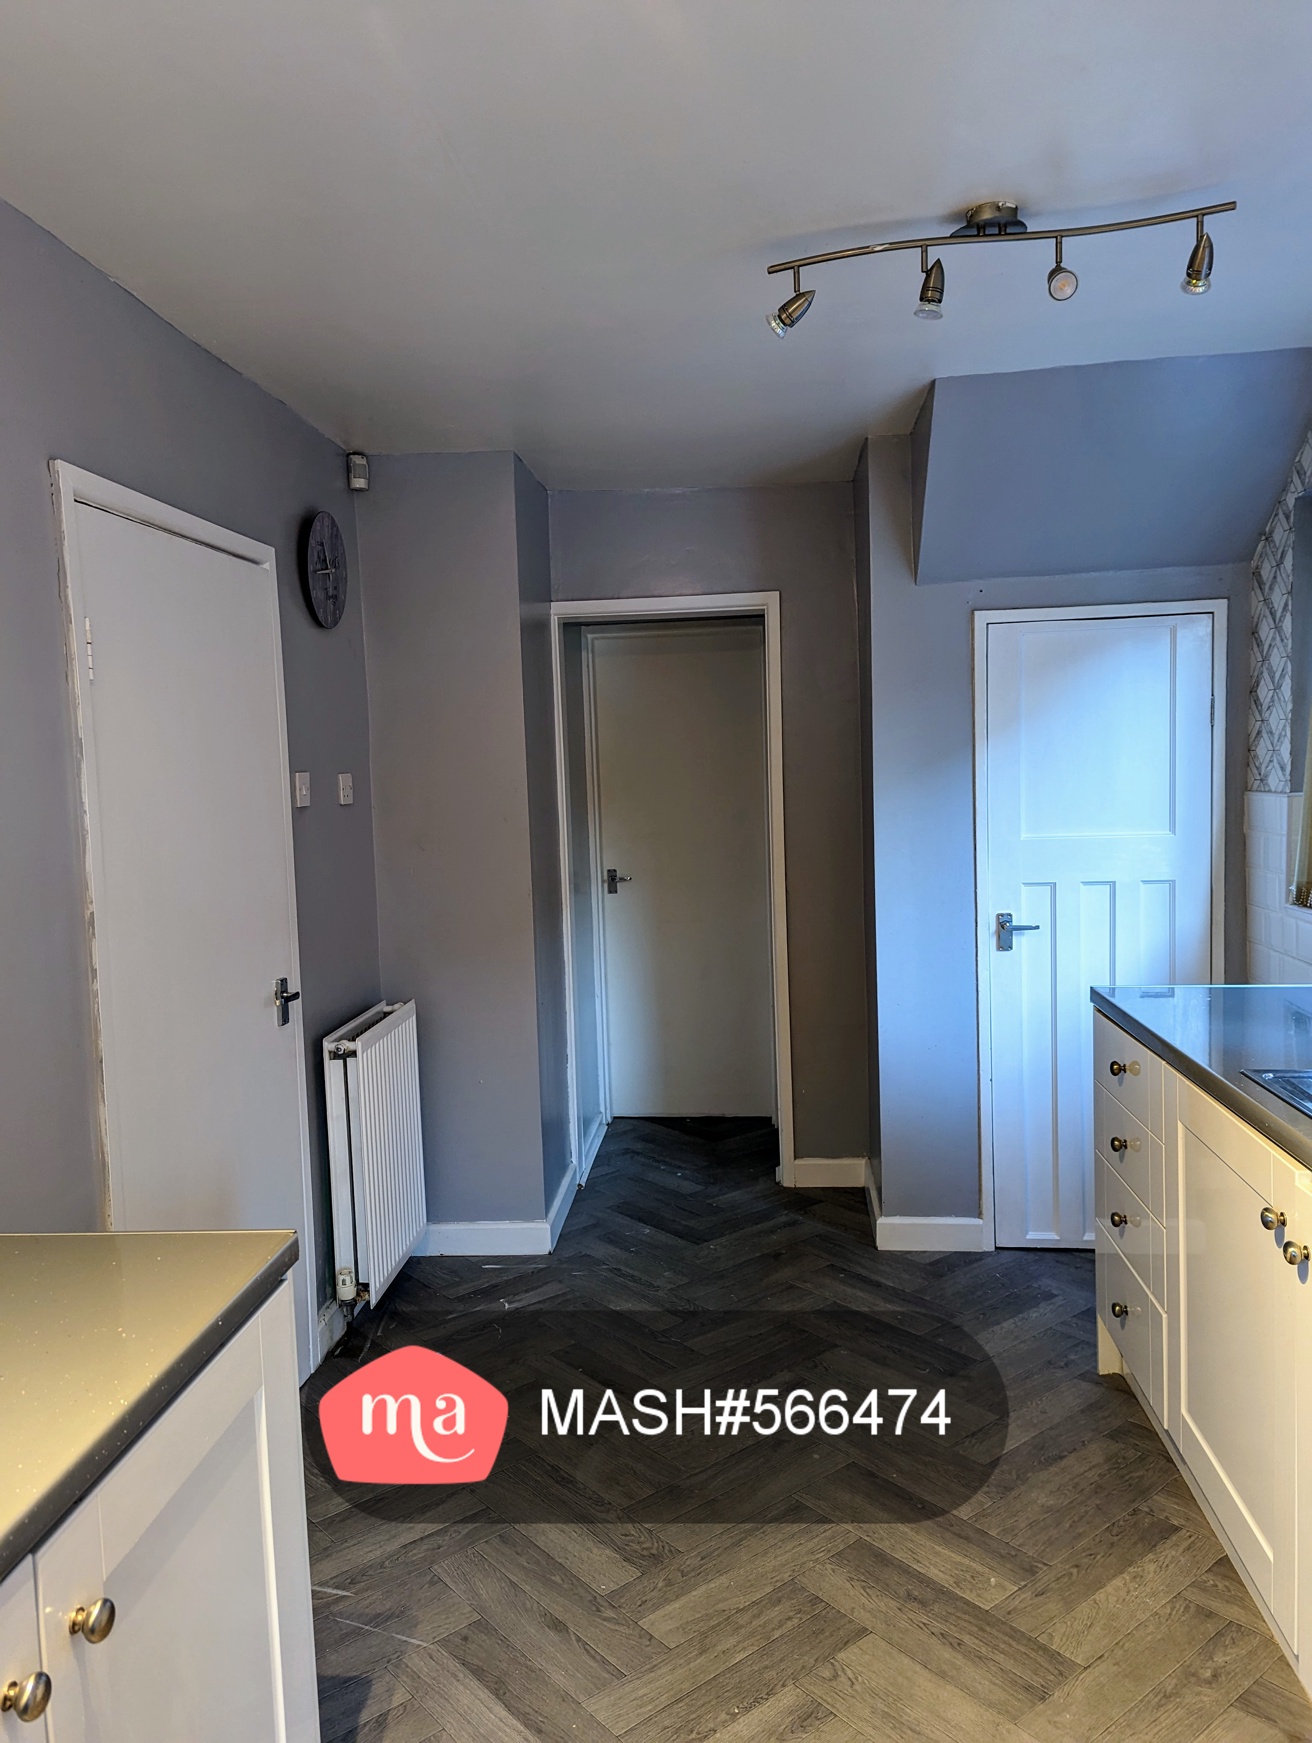 2 Bedroom Semi-detached to rent in Castleford - Mashroom